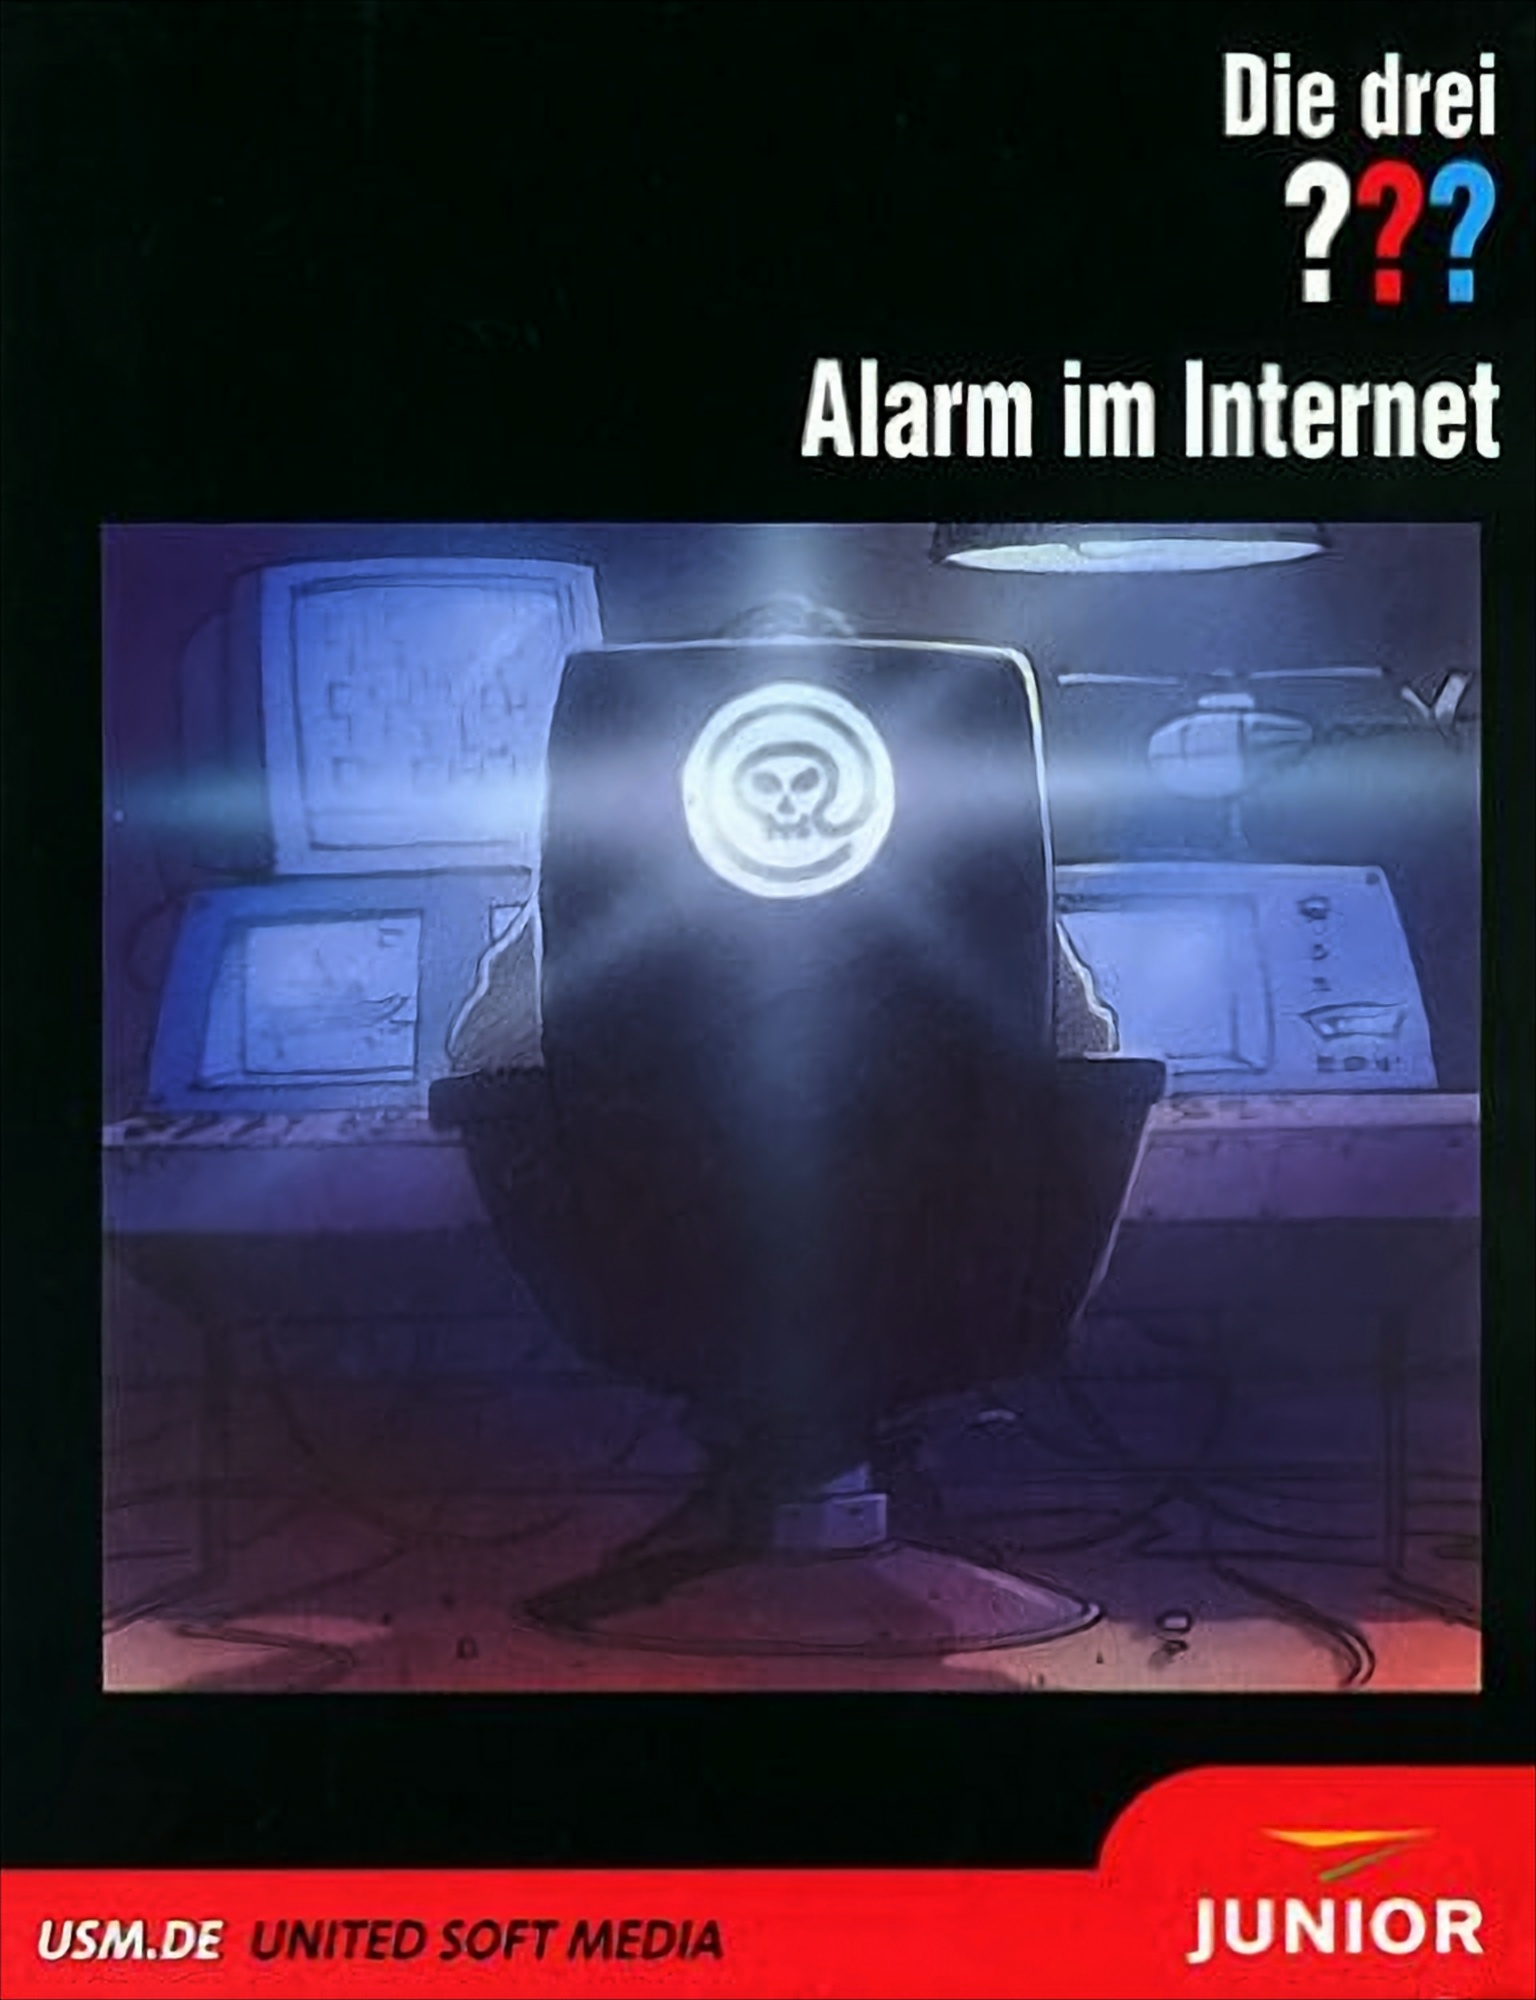 - Internet Die [PC] ??? im - Alarm drei